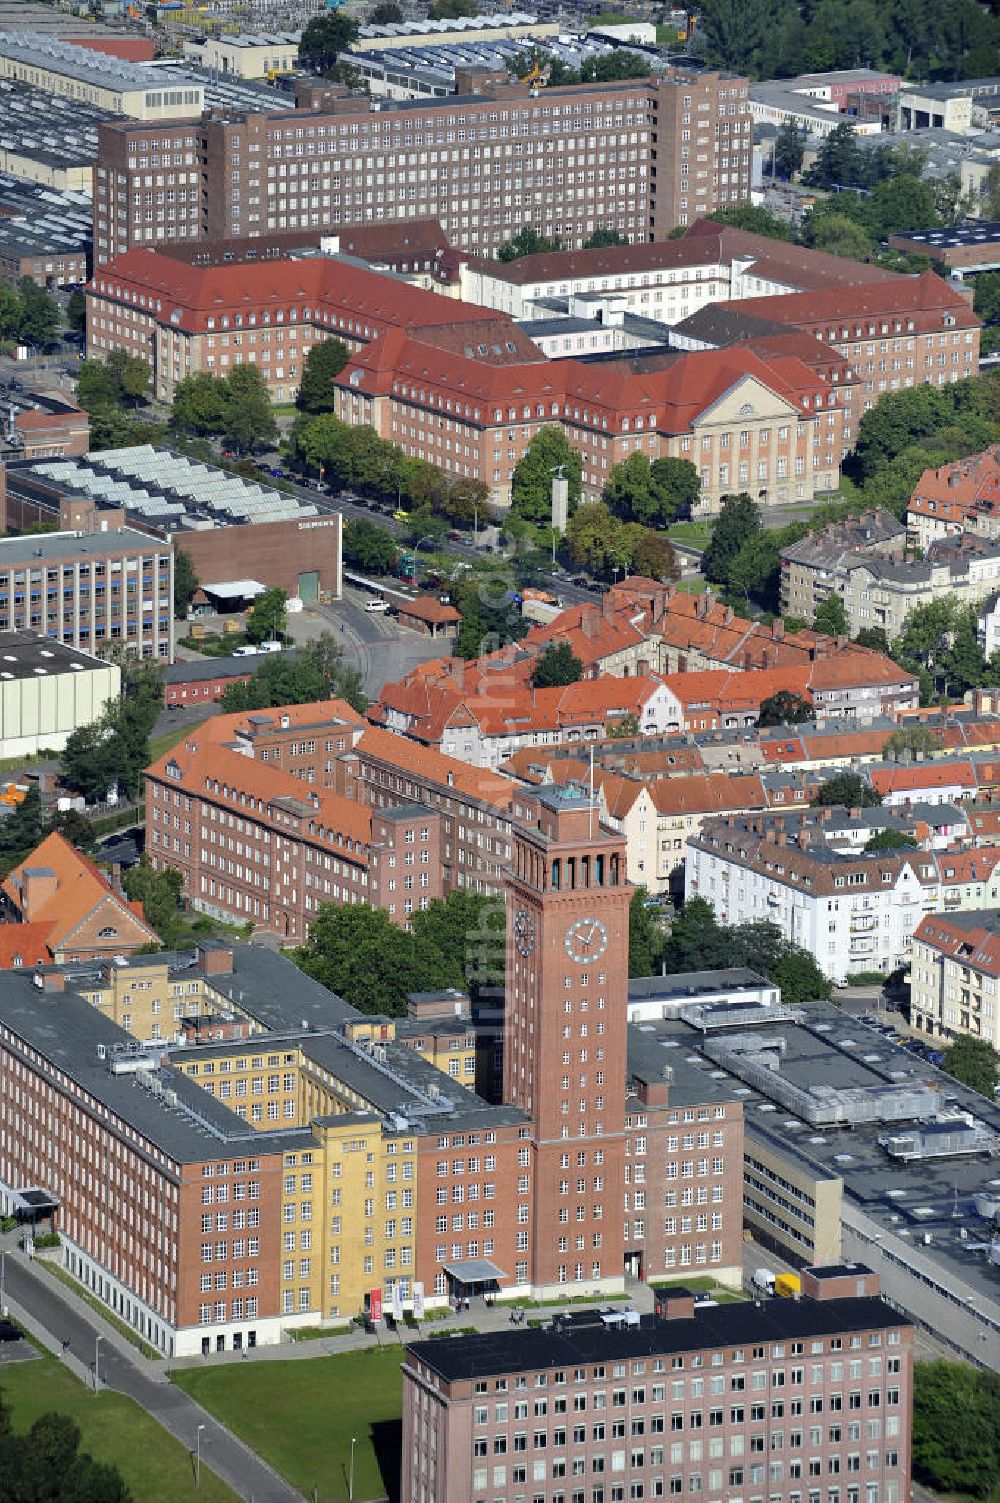 Luftbild Berlin Spandau - Stadtteilansicht der Siemensstadt in Berlin- Spandau